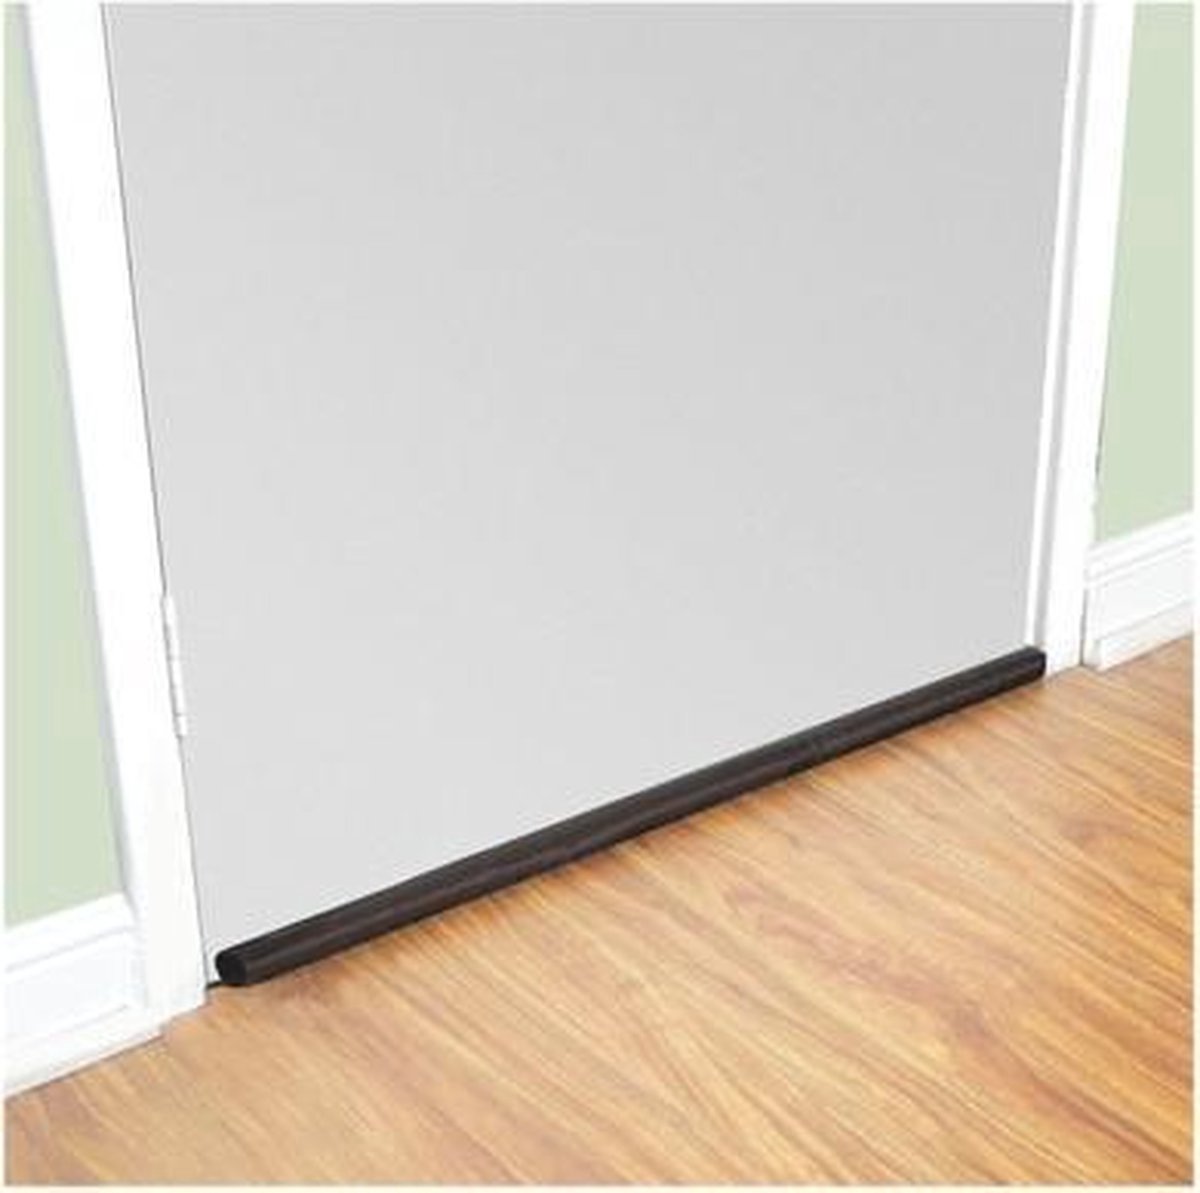 Tochtstopper voor deur - 82 cm lang - in te korten - nylon hoes - polyurethaan binnenkant - simpel maar effectief